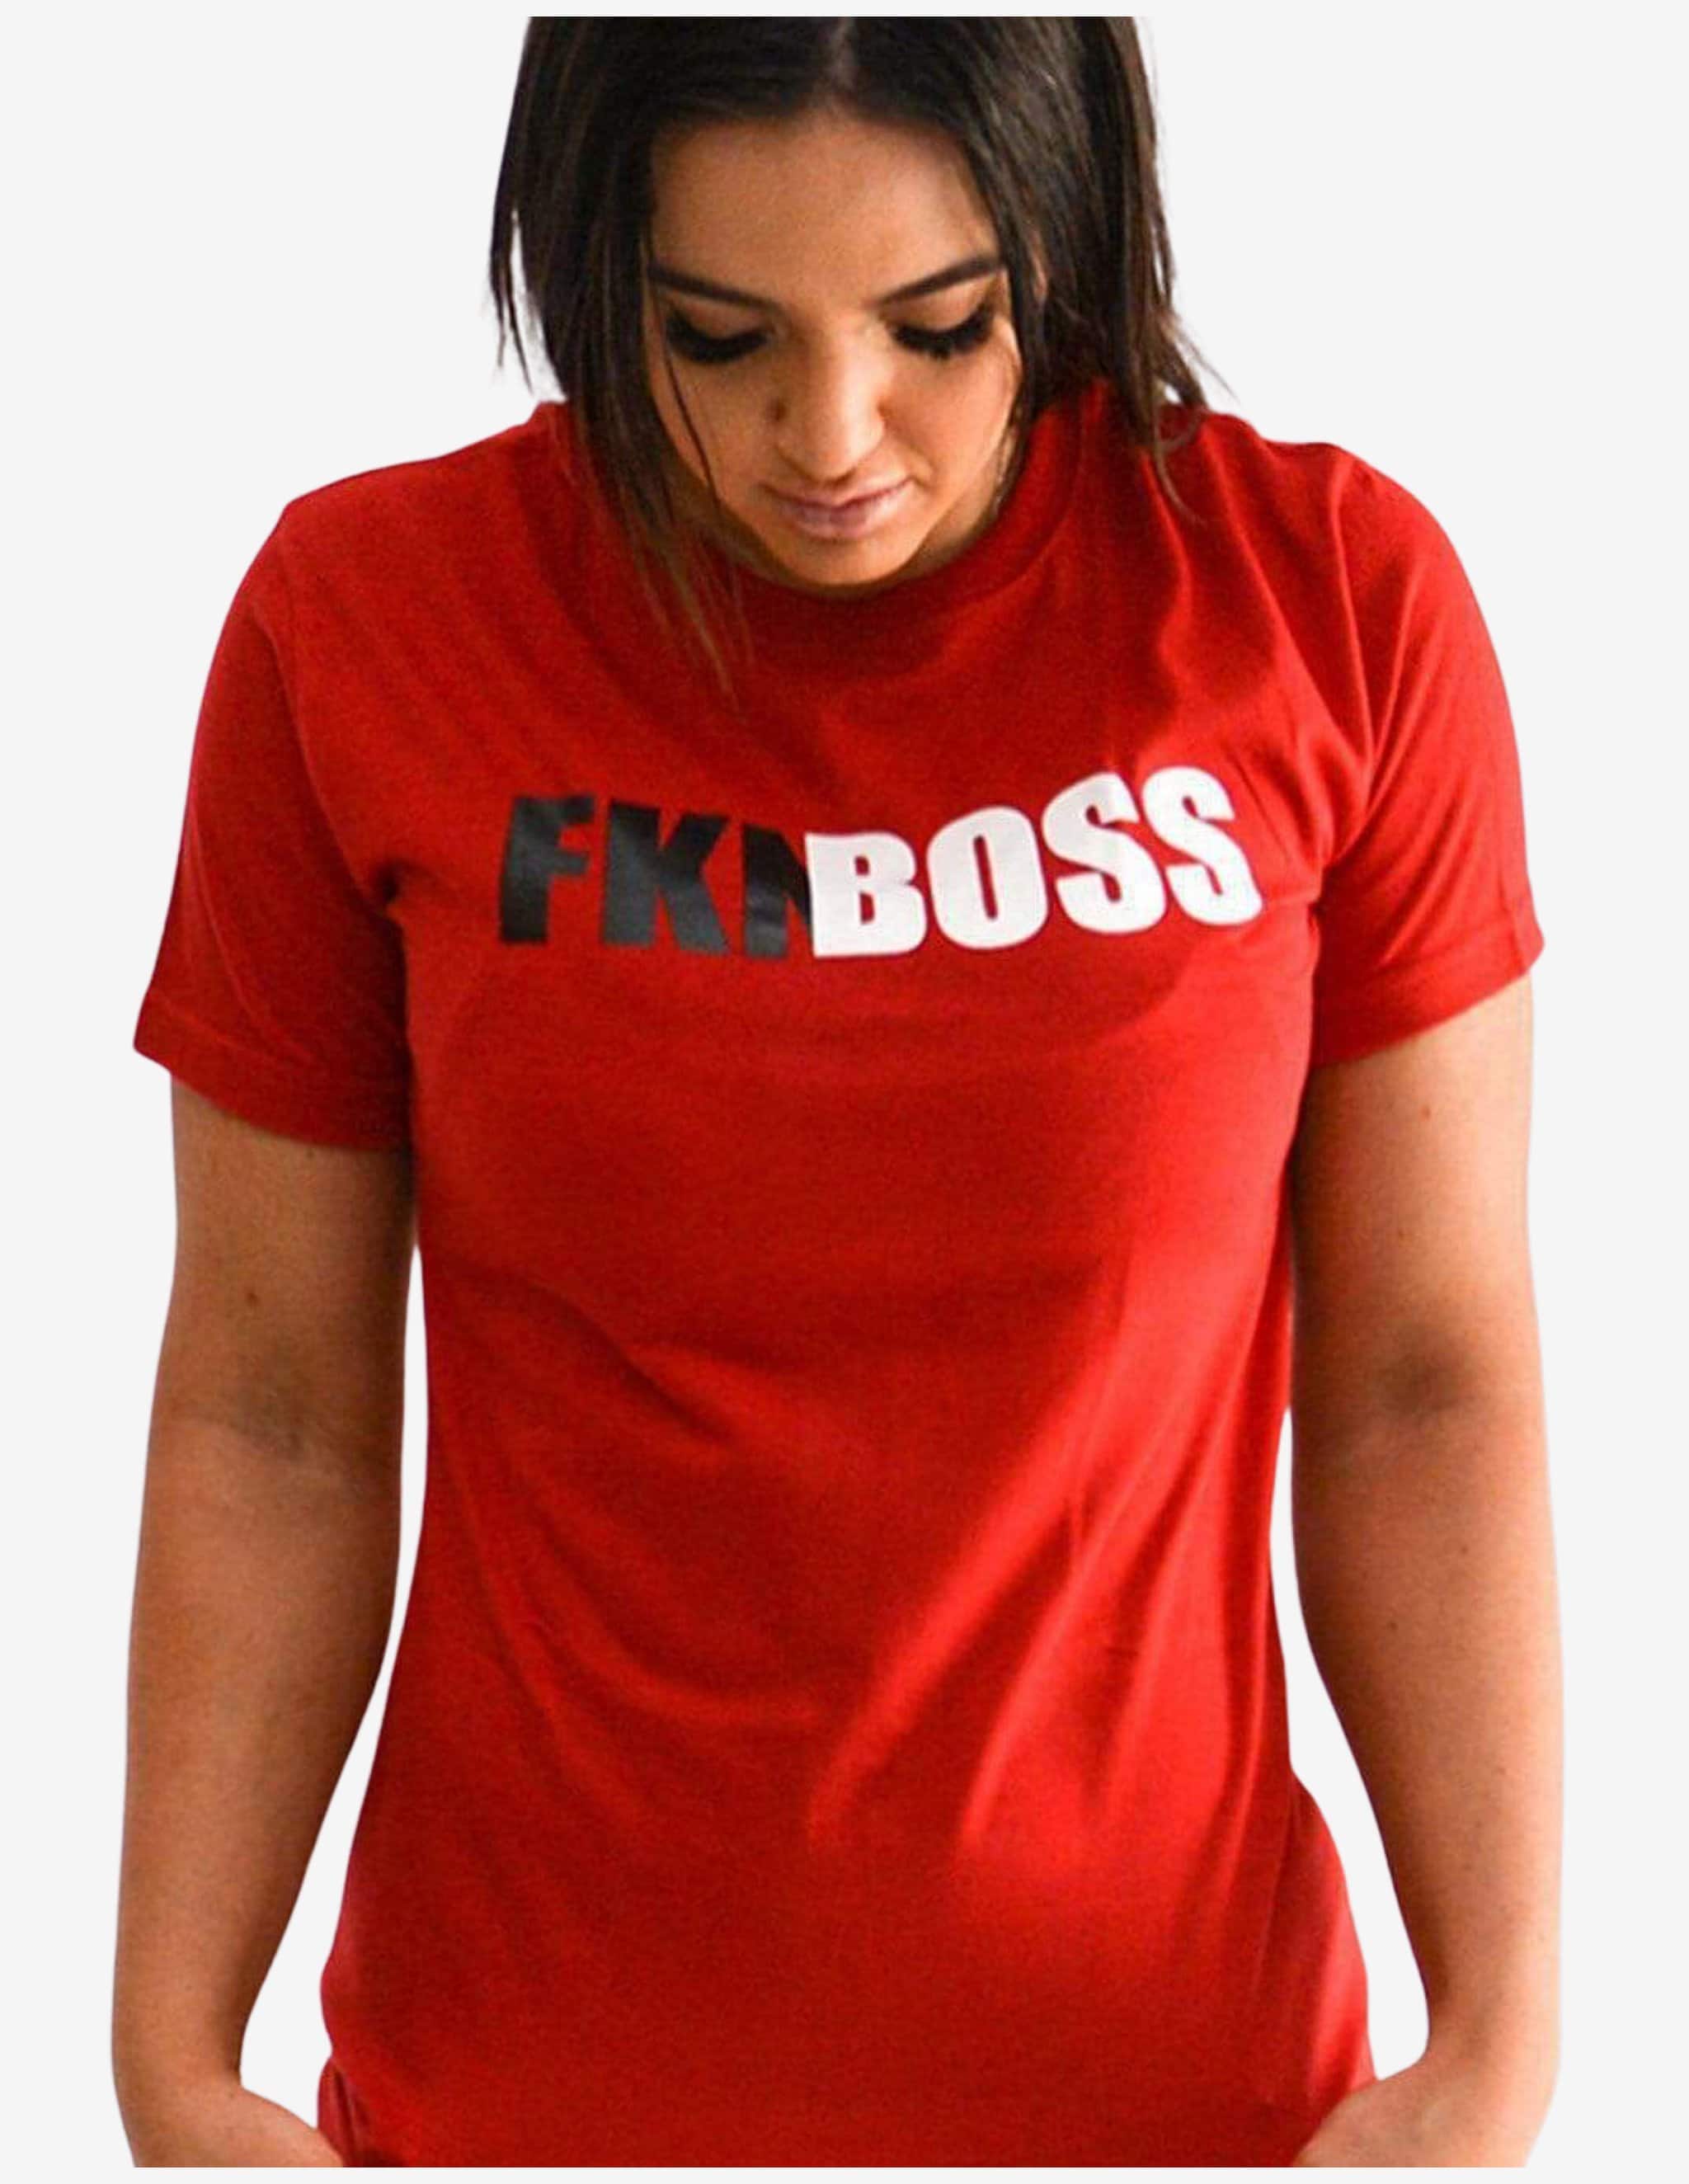 Women's Gym T-shirt-T-Shirt Woman-FKN Gym Wear-Guru Muscle